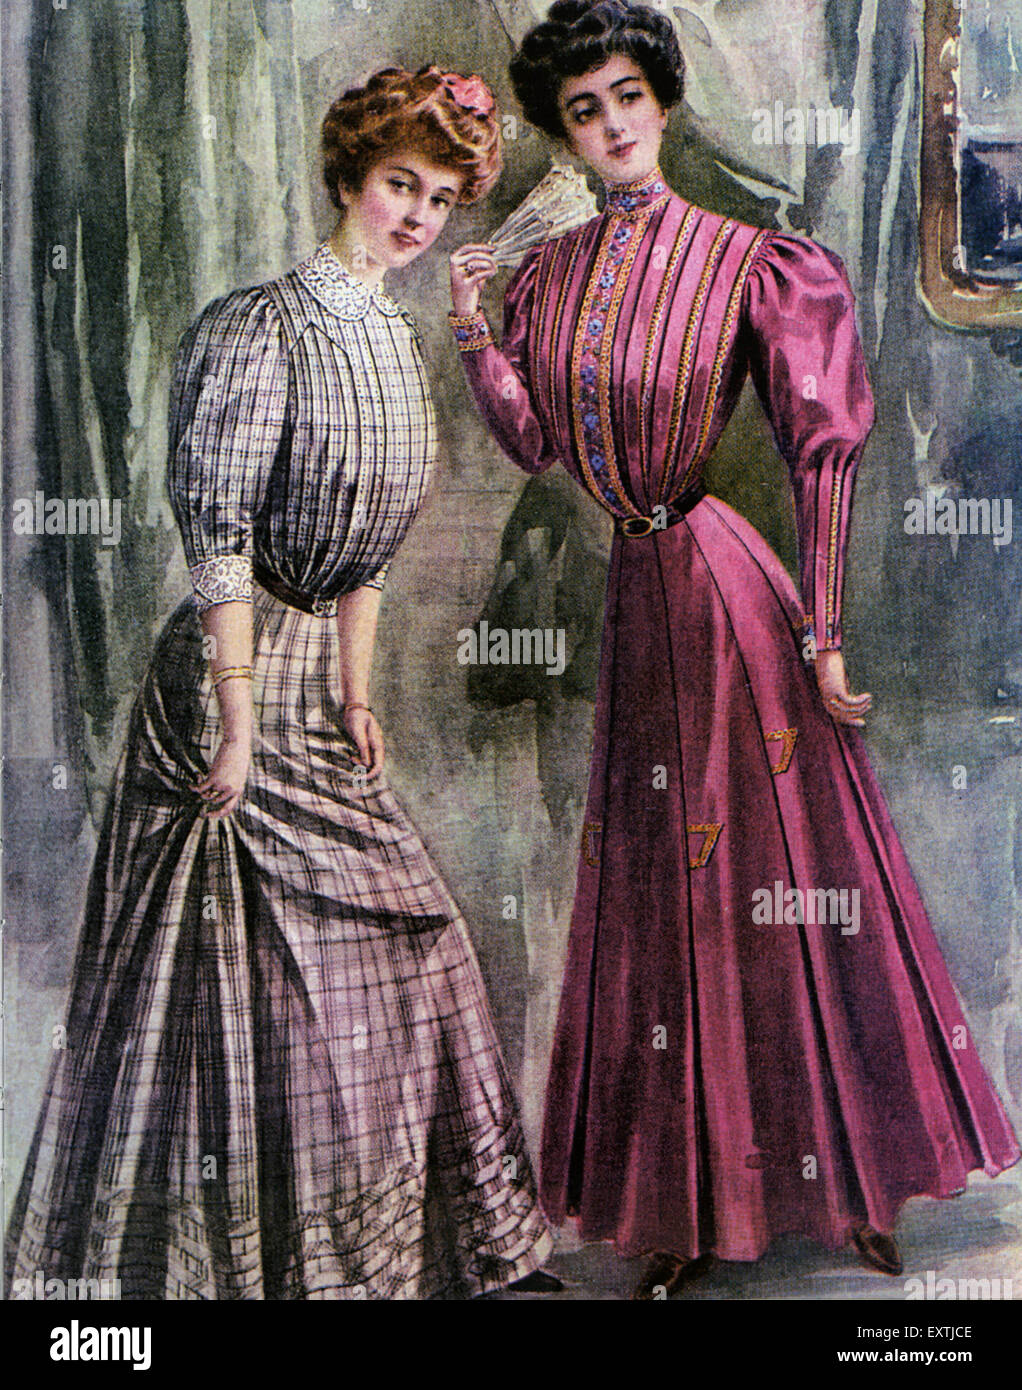 1900s USA Butterick Magazine Plate Stock Photo